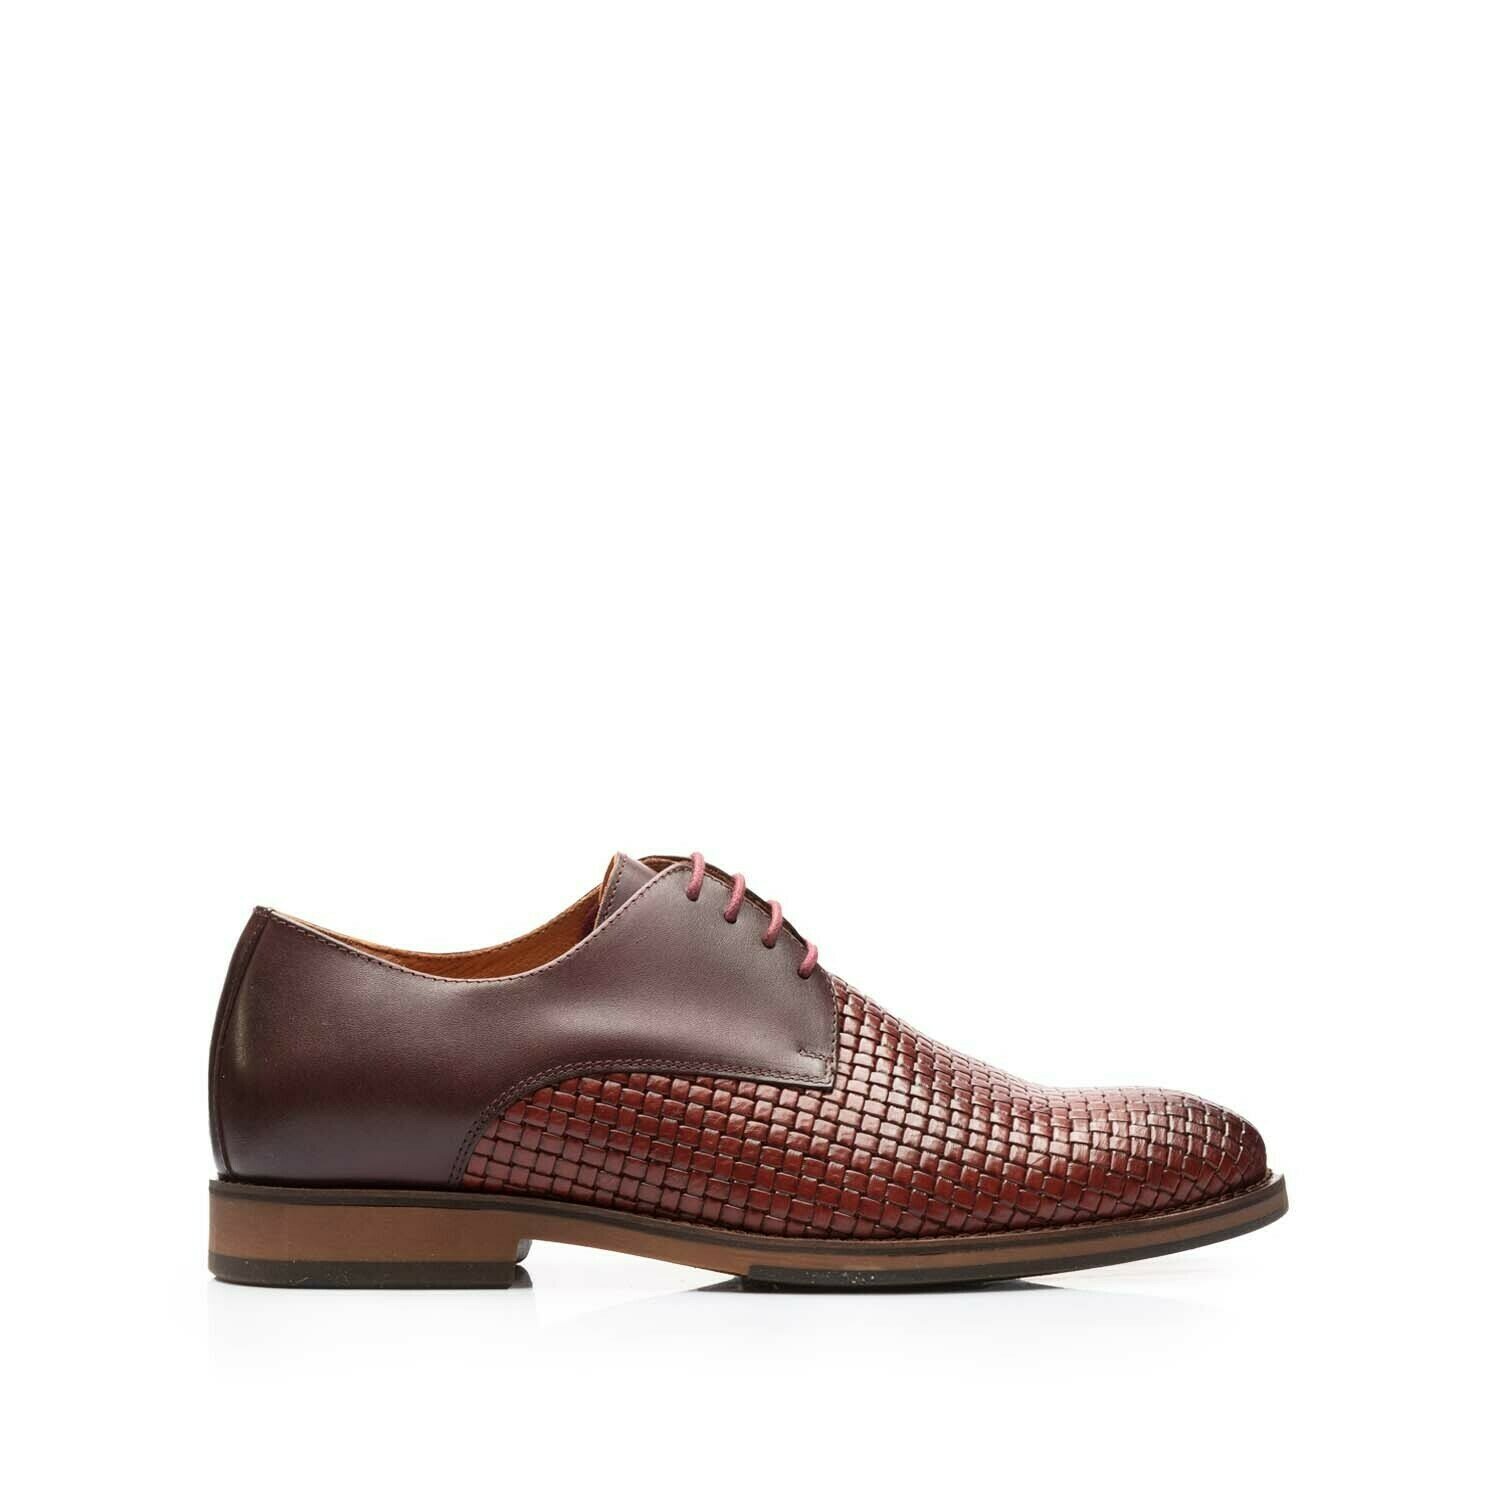 Pantofi eleganți bărbați din piele naturală, Leofex - 630 Vișiniu Box